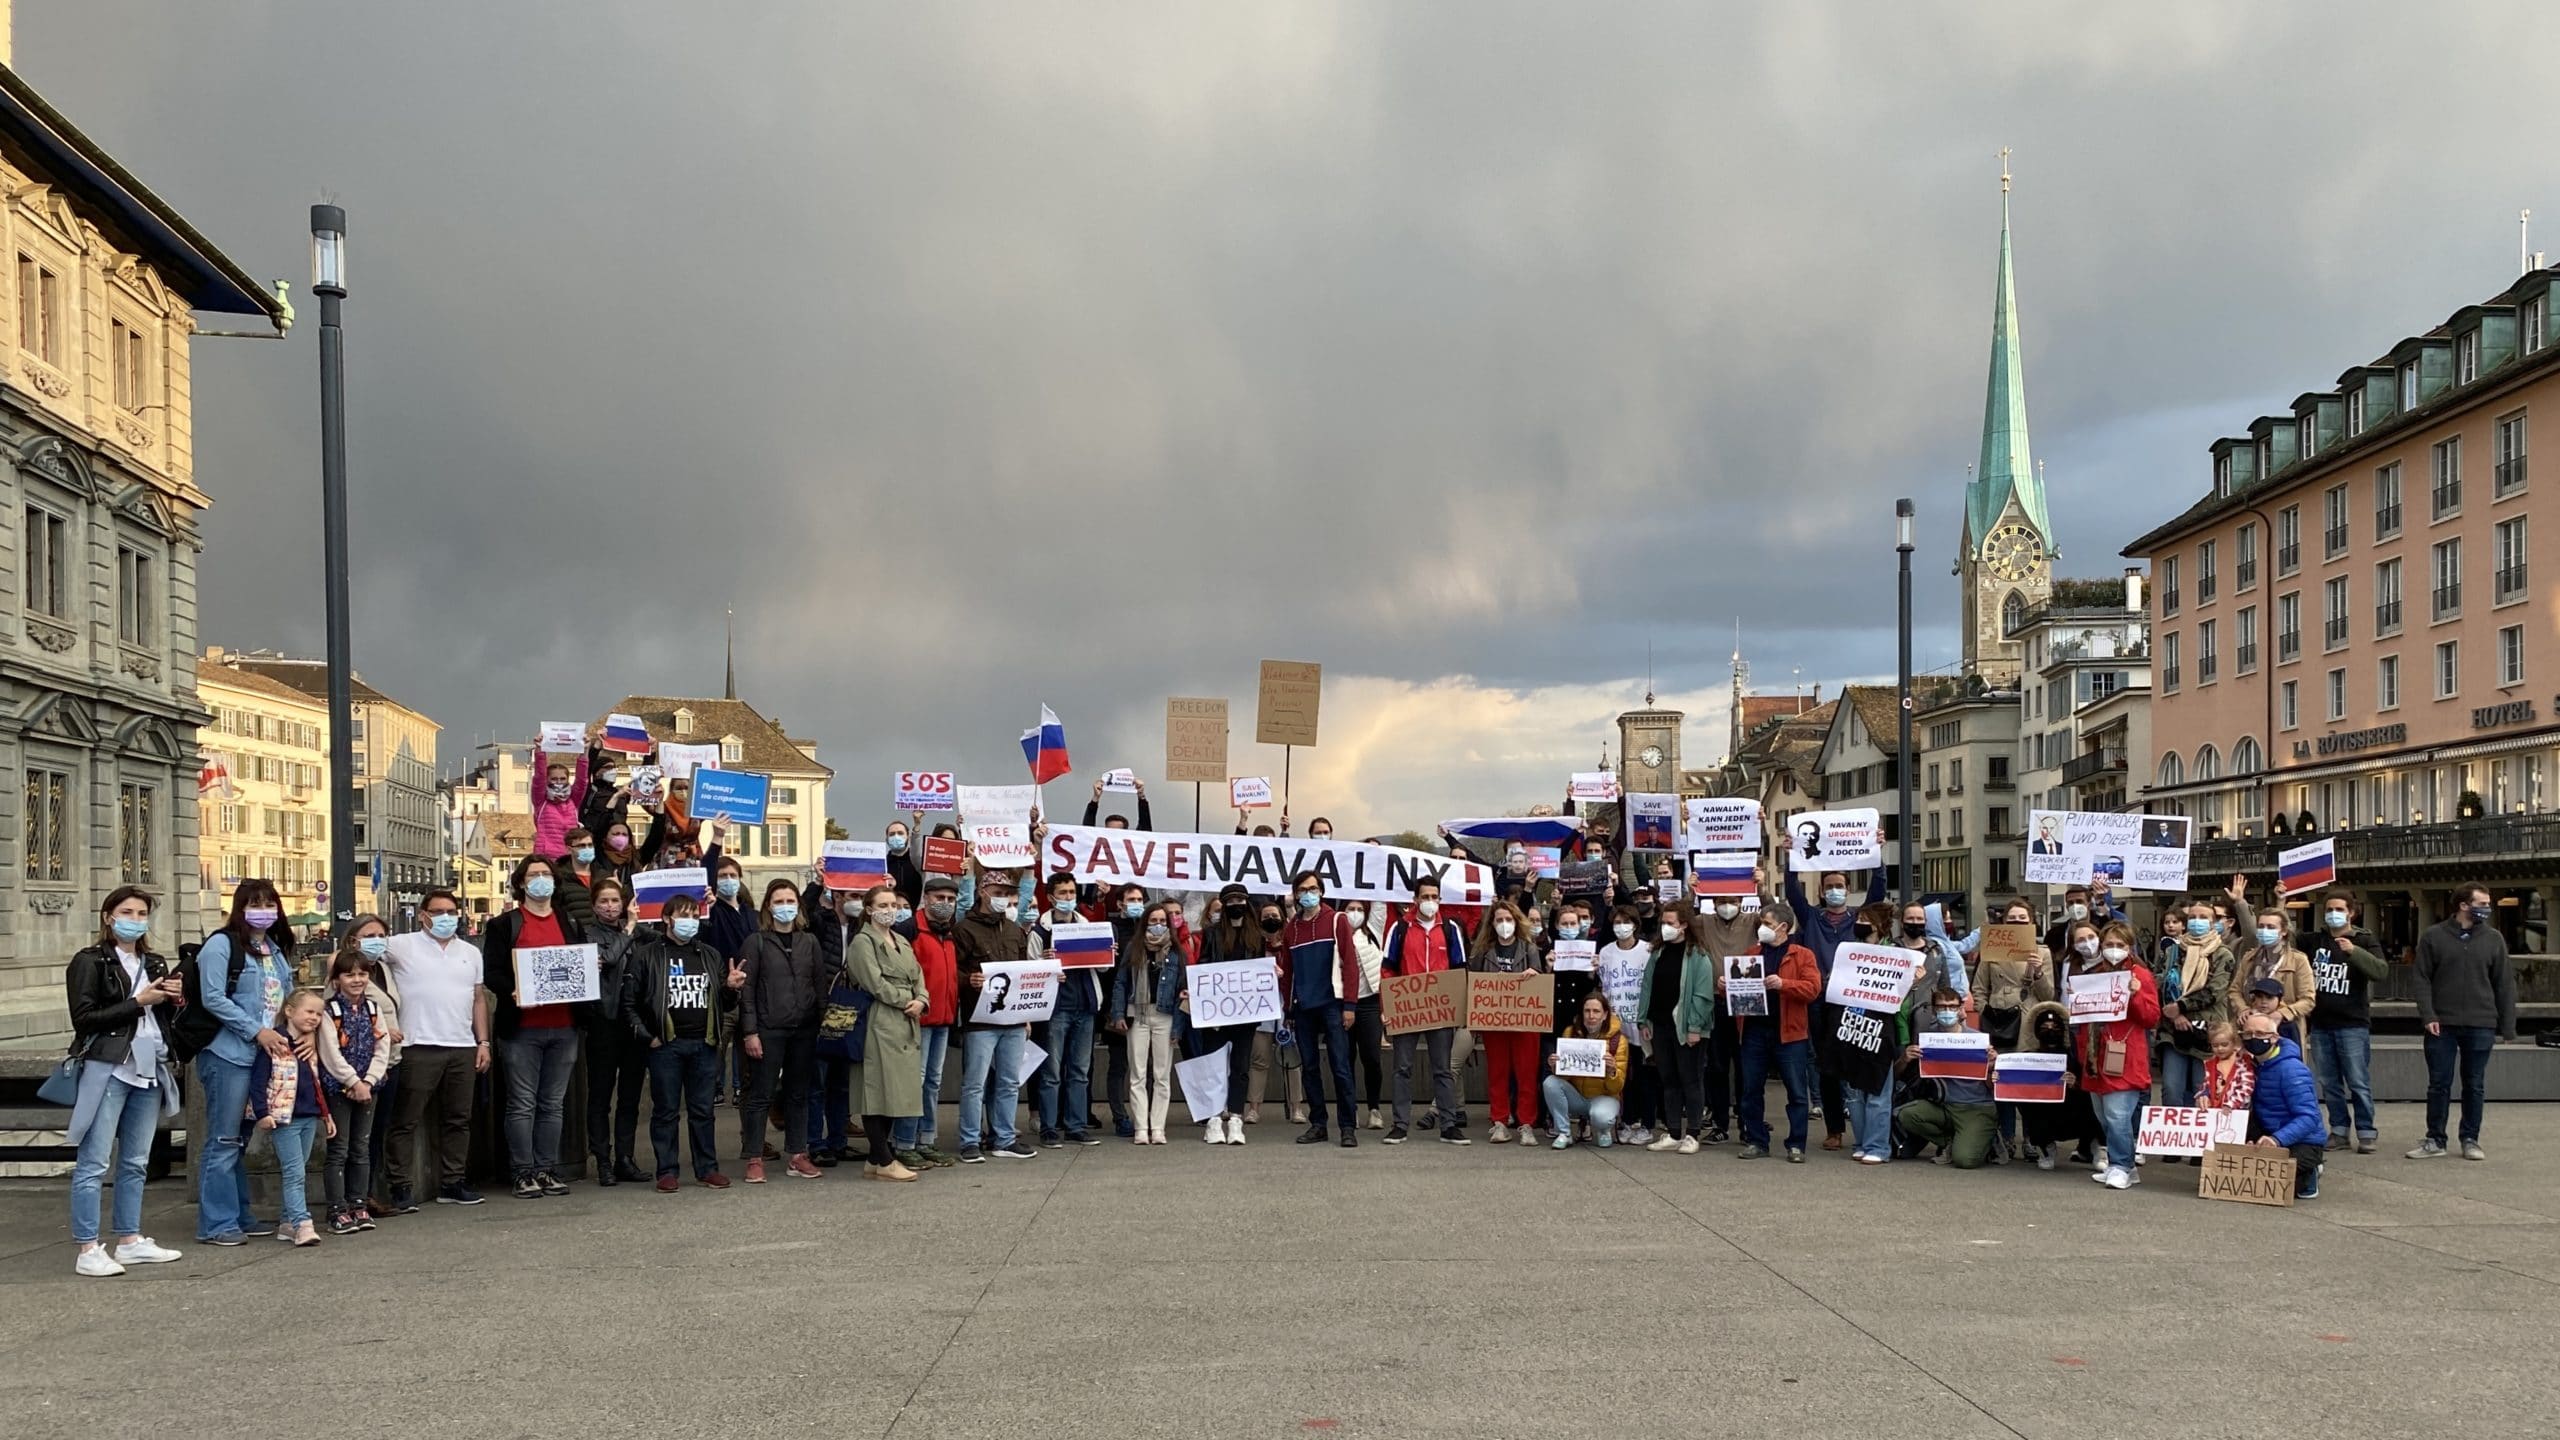 В Цюрихе митинг «Save Navalny! Stop Putin!» объединил более ста человек, ровно столько разрешали карантинные ограничения. 21.04.2021 г. (© schwingen.net)